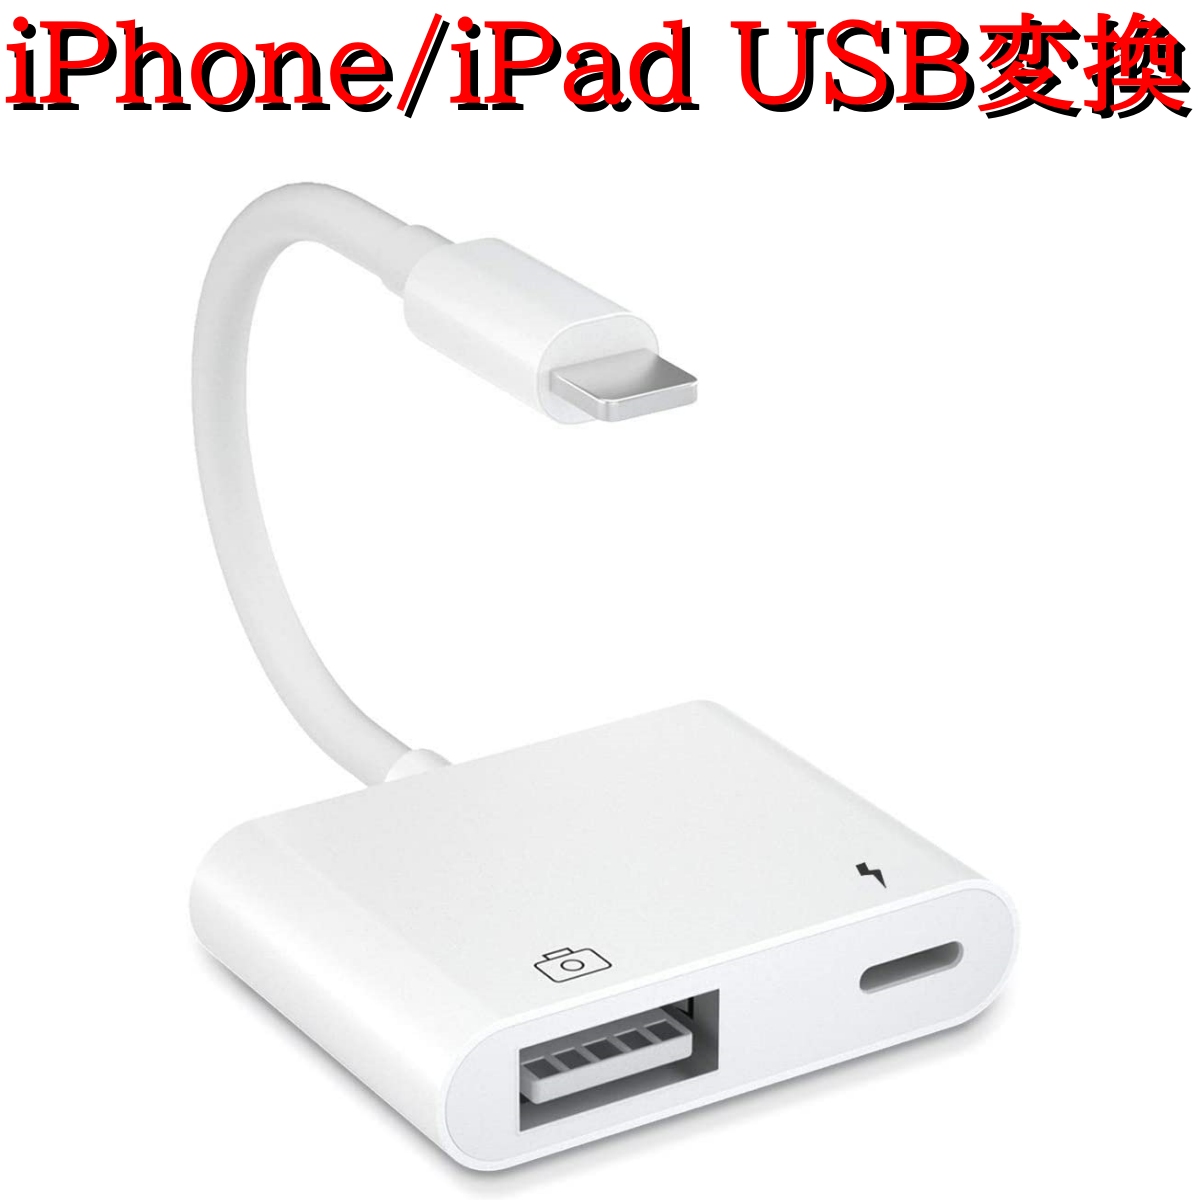 Lightning USB カメラ アダプタ iPhone 14 Pro iPad USB カードリーダー 最大2TBまで対応 MIDI キーボード カメラ 接続可能 高速な写真転送  USB 変換 アダプタ  OTG 変換アダプタ 設定不要 操作不要 スーパーDEAL